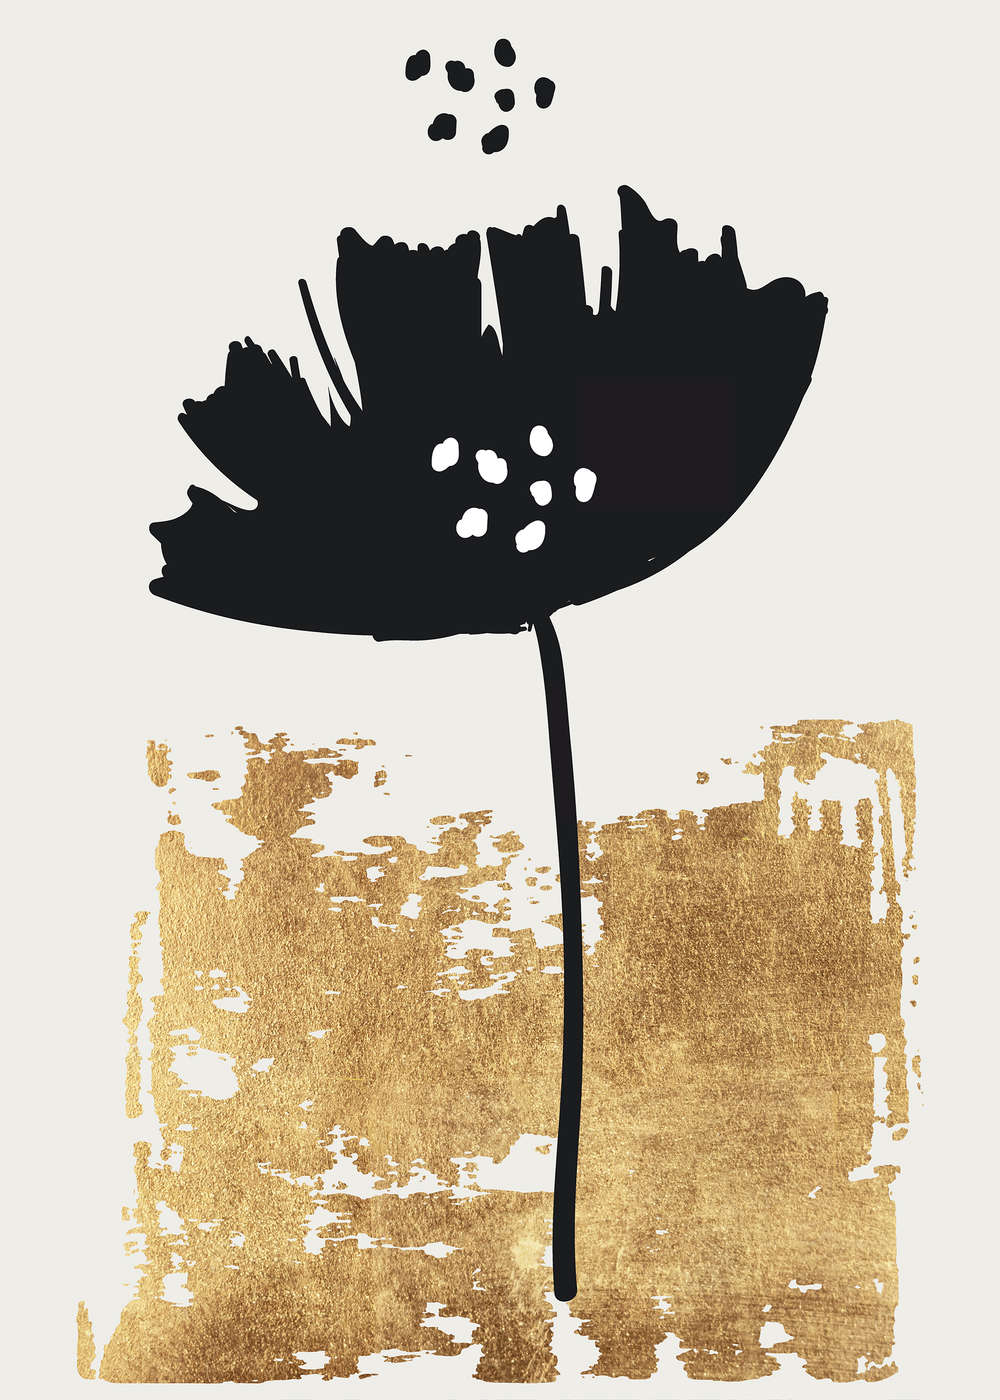             Photo wallpaper art linocut flower & gold texture
        